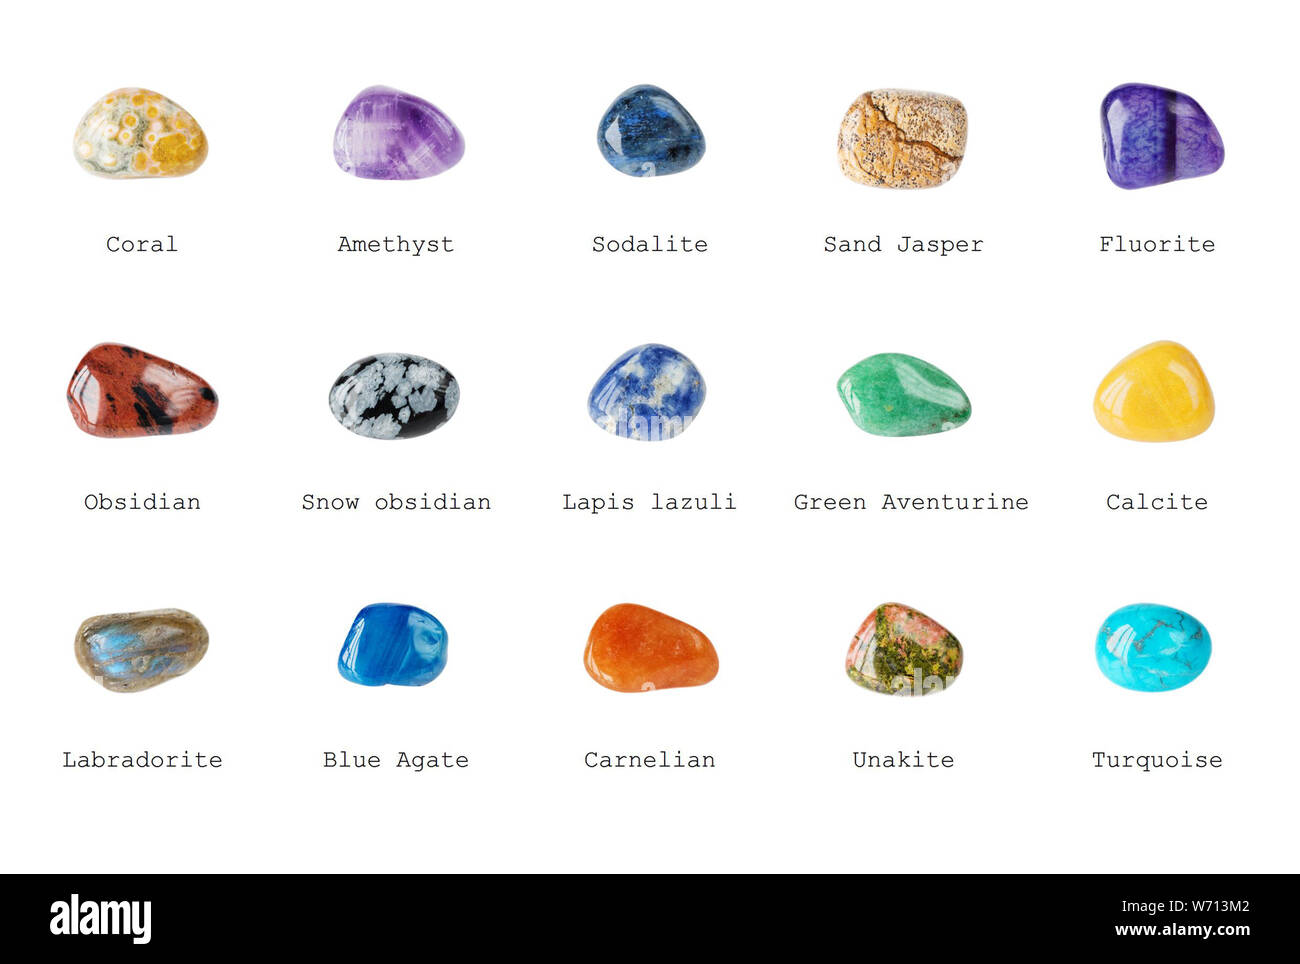 Minerales azules con nombres fotografías e imágenes de alta resolución -  Alamy